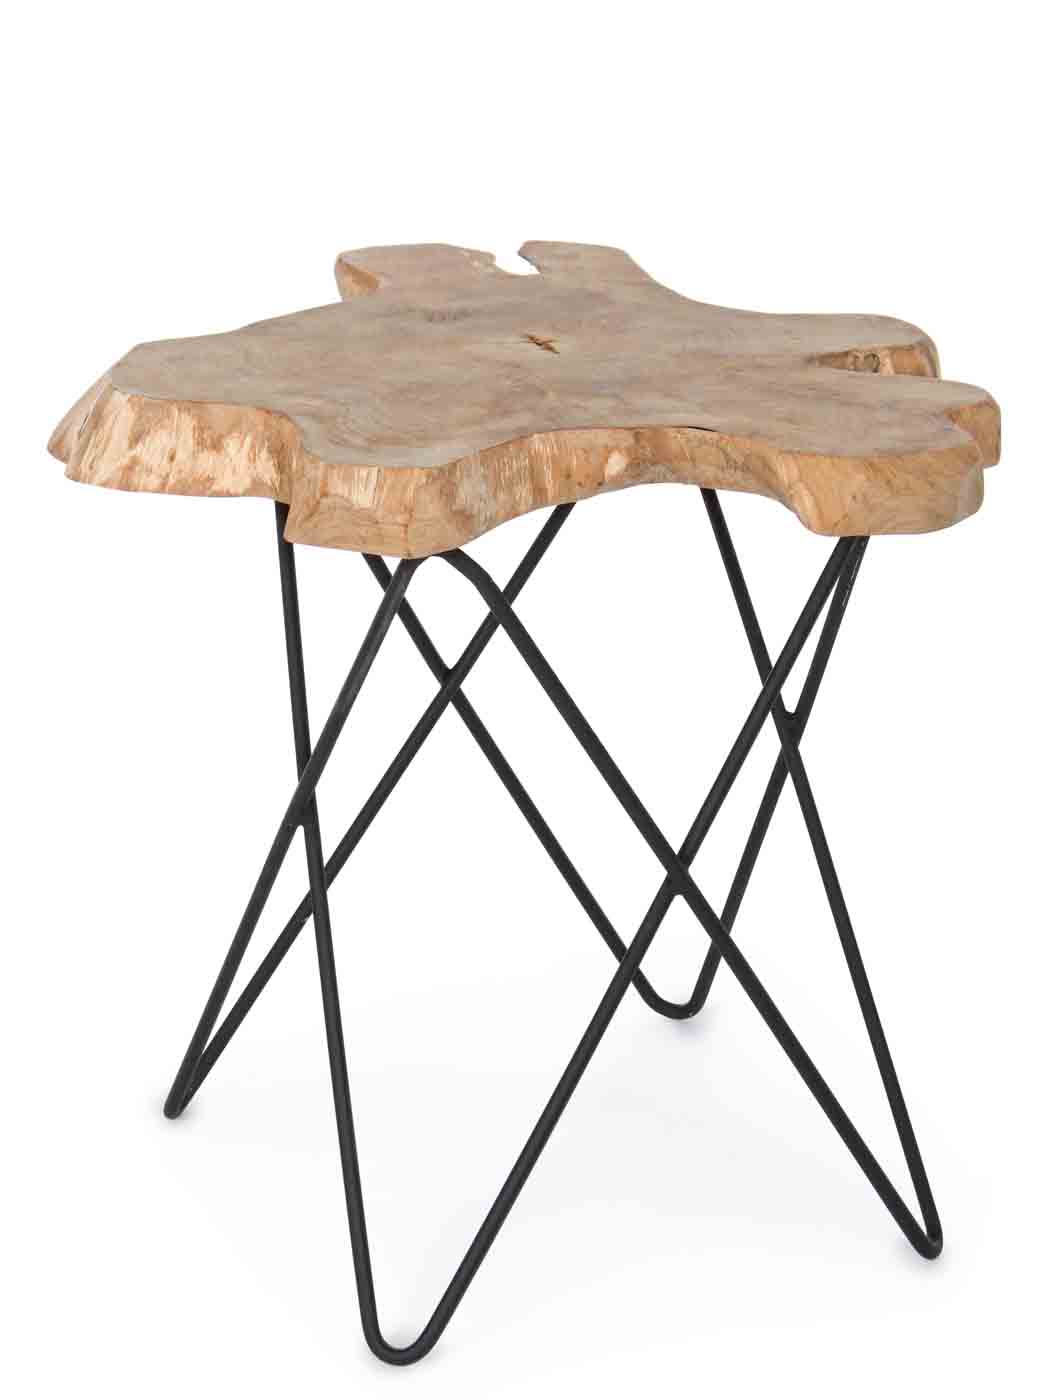 Die Tischplatte des Couchtisches Savanna wurde aus einer Teakholz-Wurzel gefertigt, dadurch ist jeder Tisch ein Unikat. Das Gestell ist aus Stahl und ist in einem schwarzem Farbton.